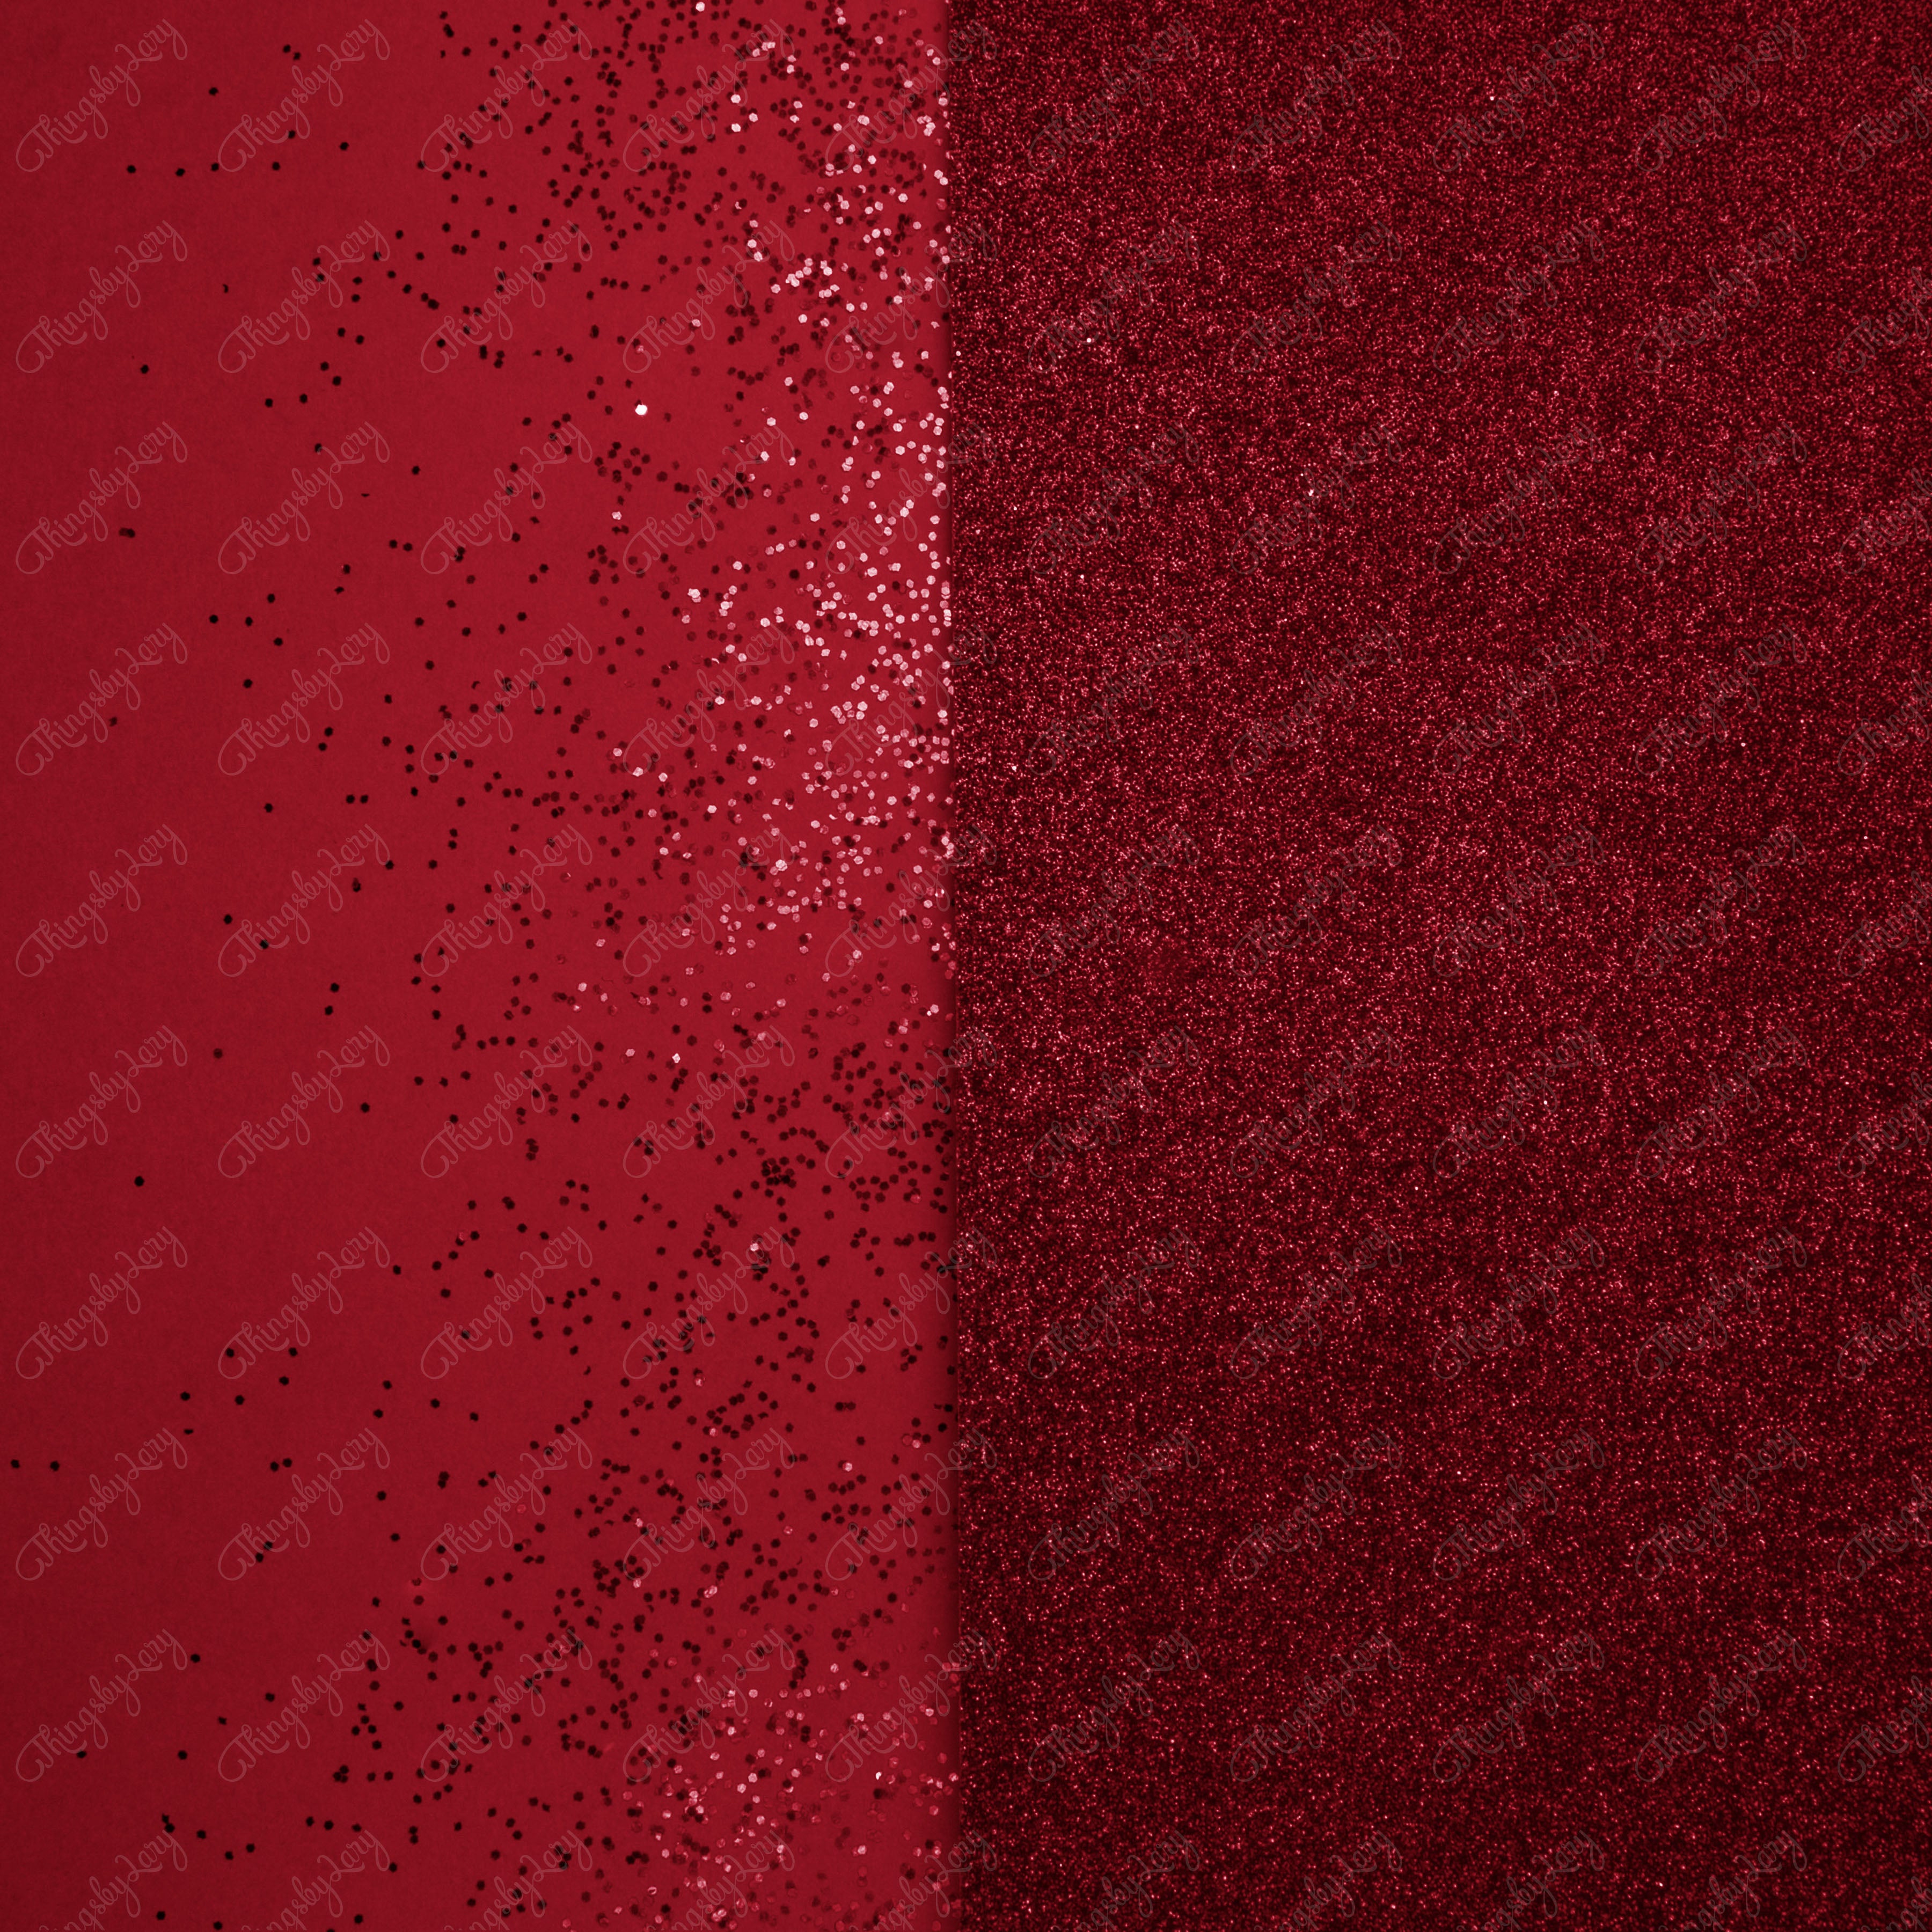 100 Half Split Glitter Background Digital Images